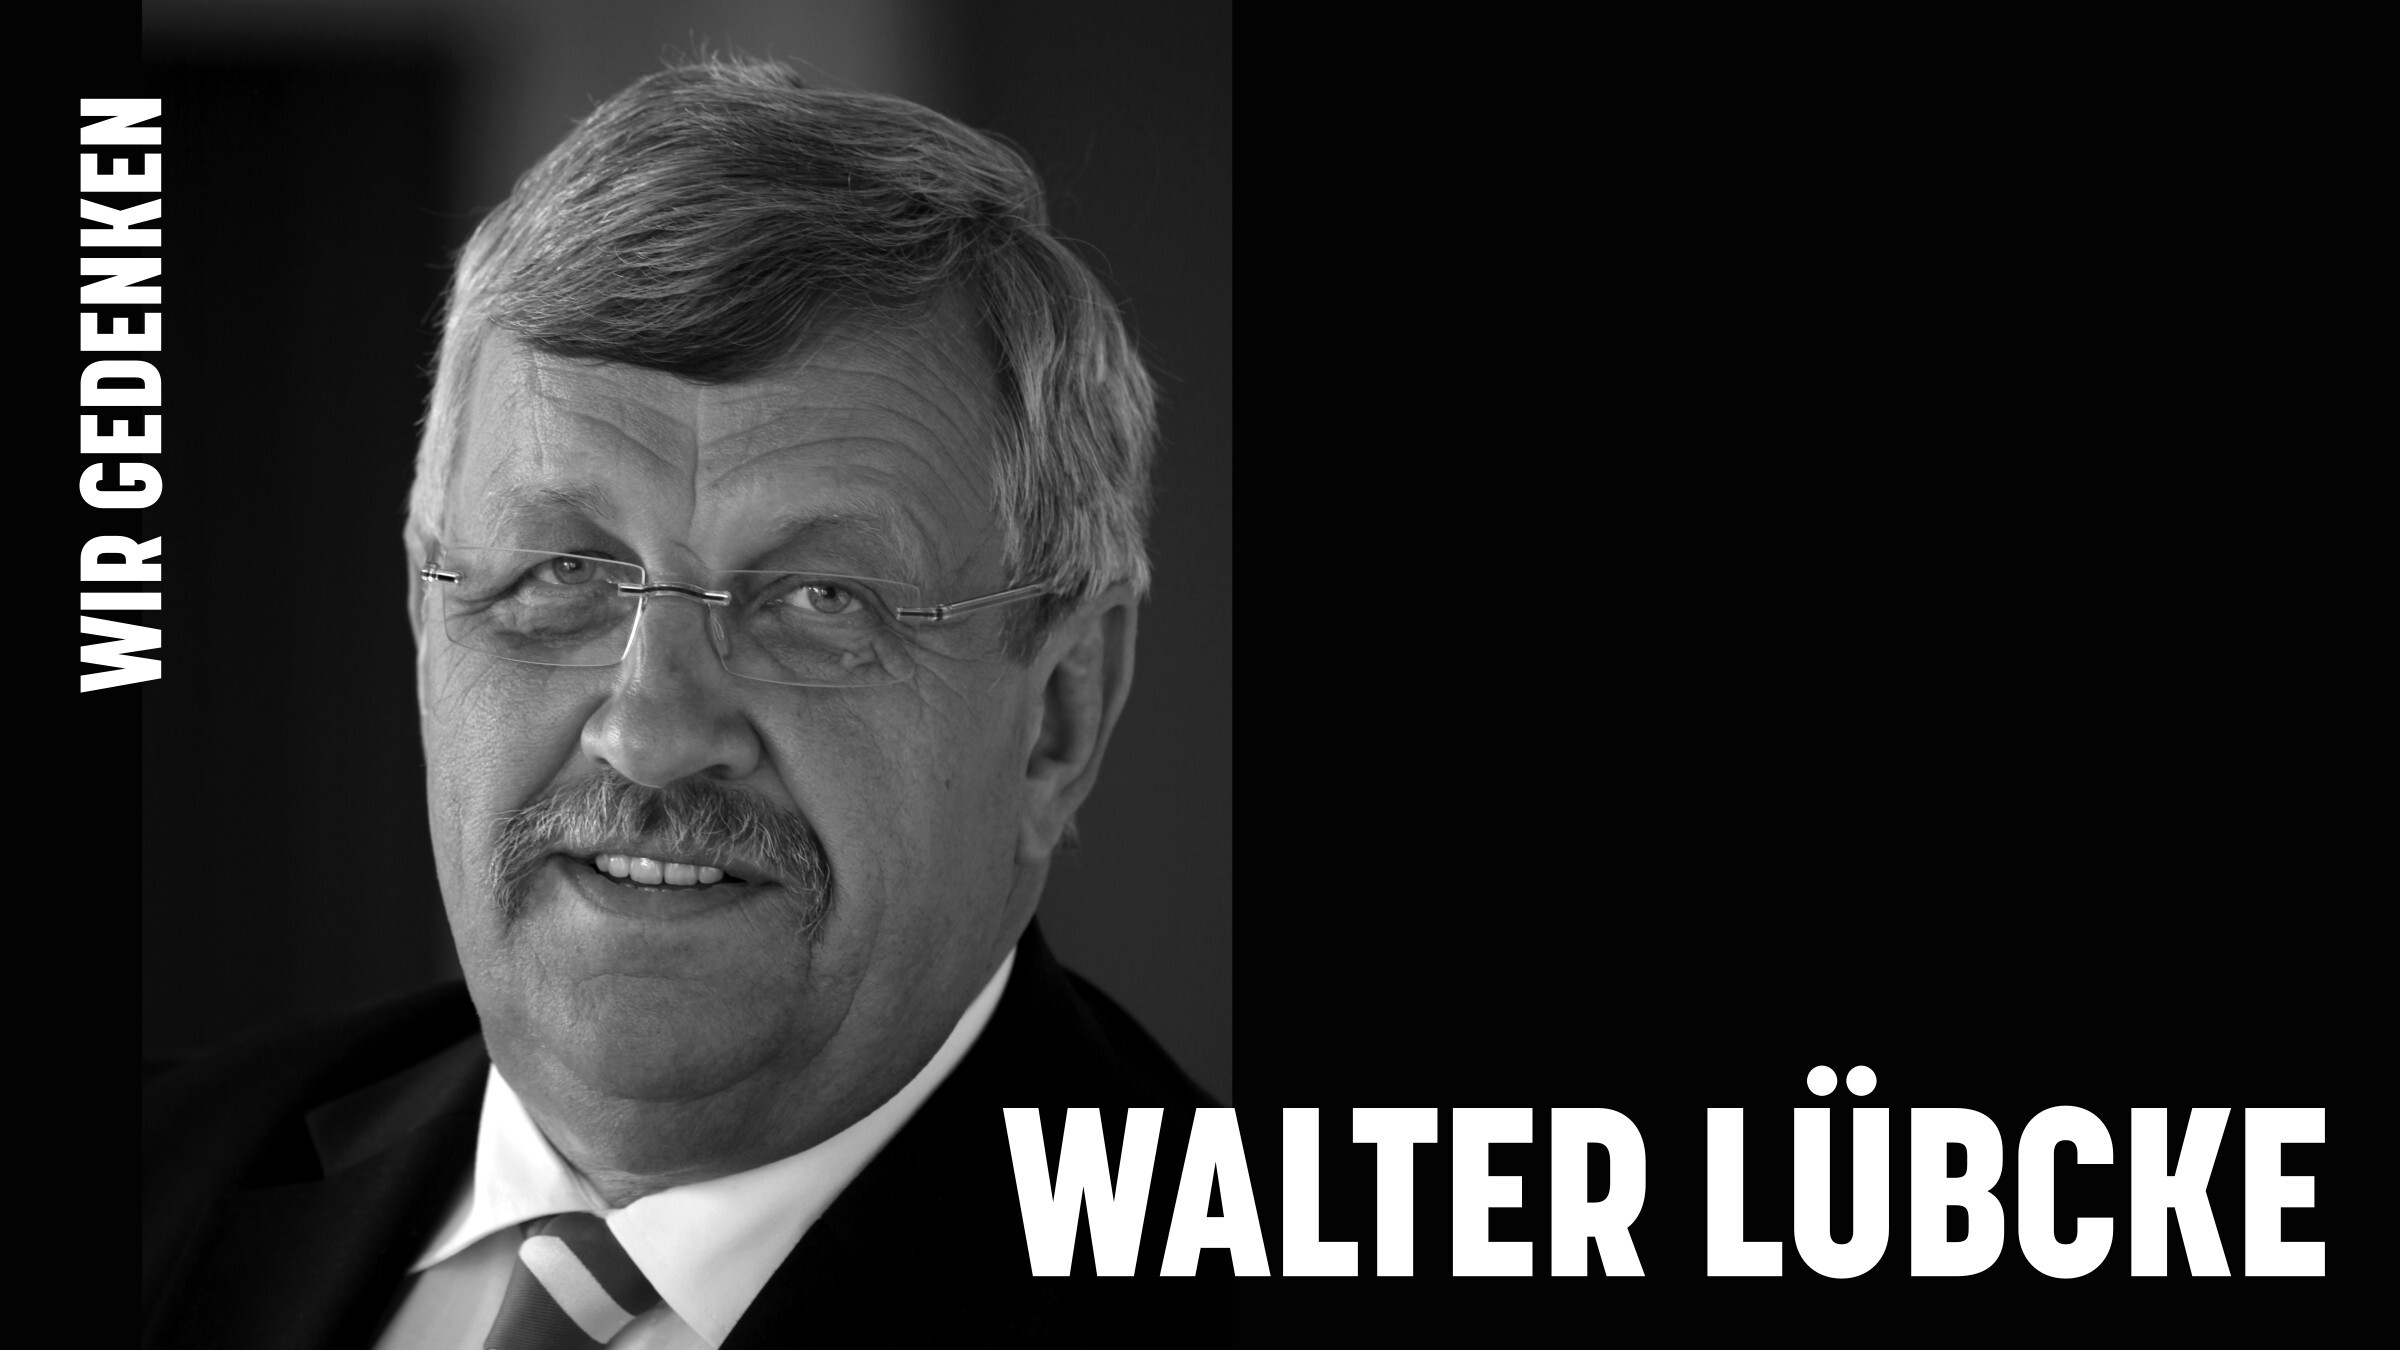 Foto von Walter Lübcke schwarz-weiß vor schwarzem Hintergrund. Schrift in weiß. Text links oben schräg: Wir gedenken. Text rechts unten horizontal, größer: Walter Lübcke.